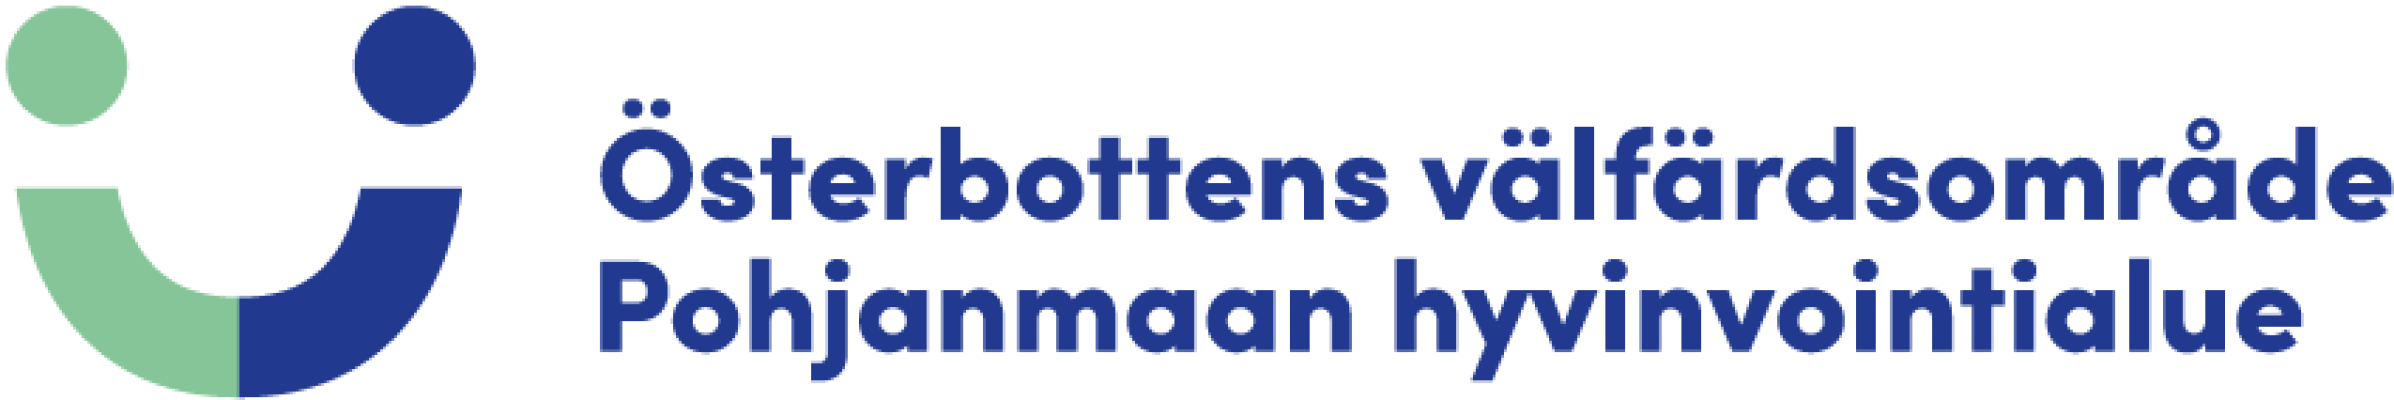 Välfärdsområdets logo på två språk.